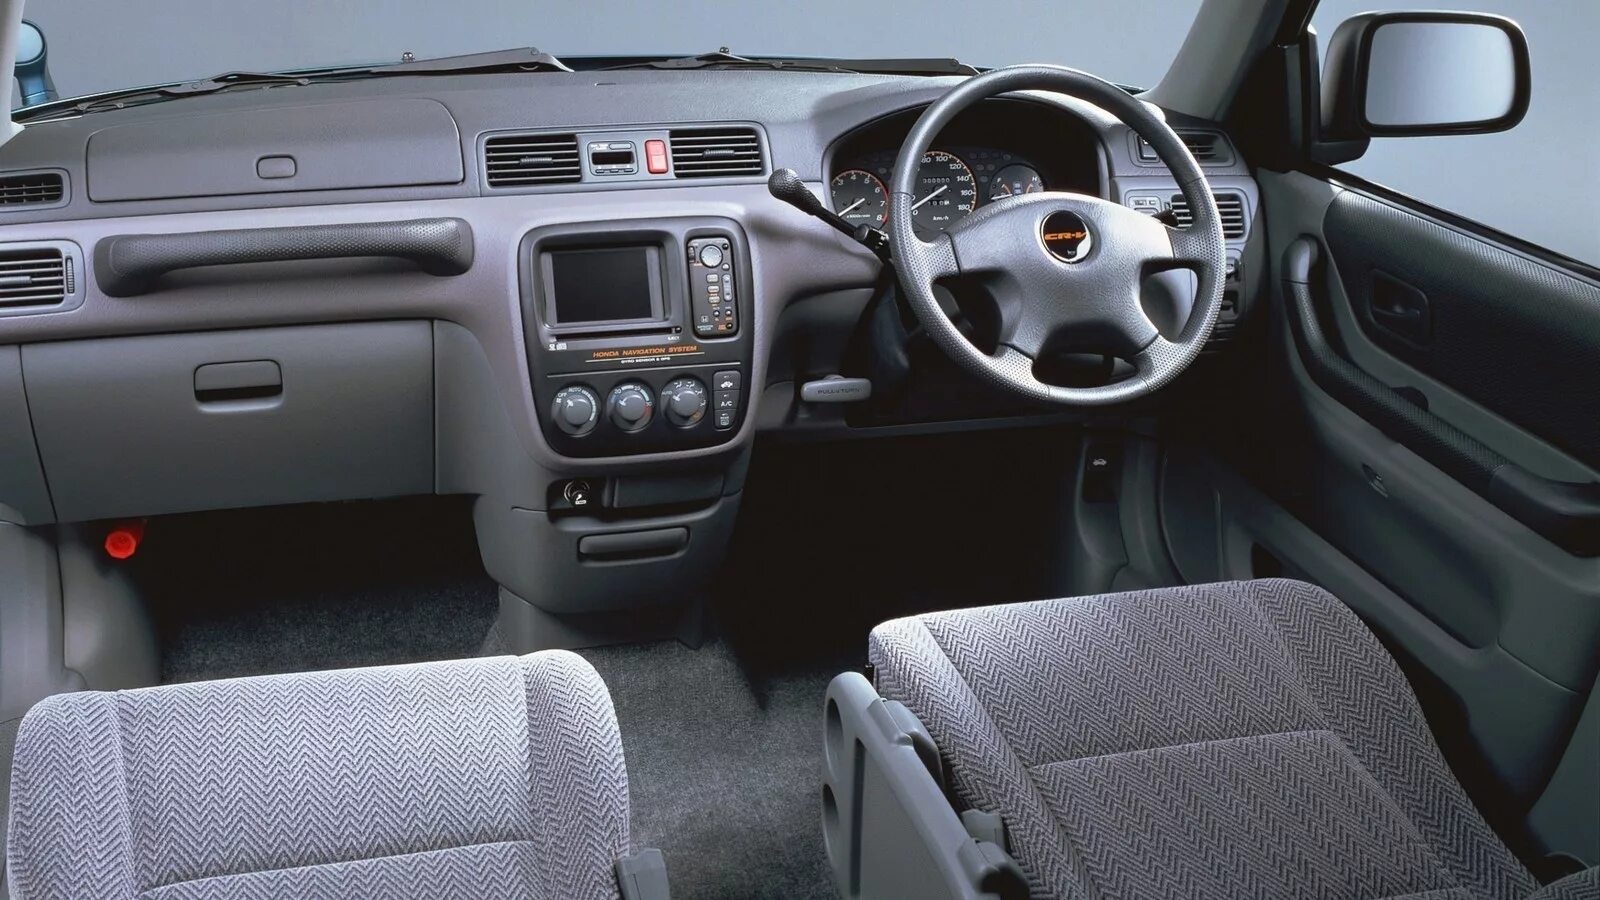 Honda cr 1998. Honda CR V 1997 Interior. Honda CR-V rd1 салон. Хода СРВ 1поколение салон. Honda CR-V 1 поколение салон.